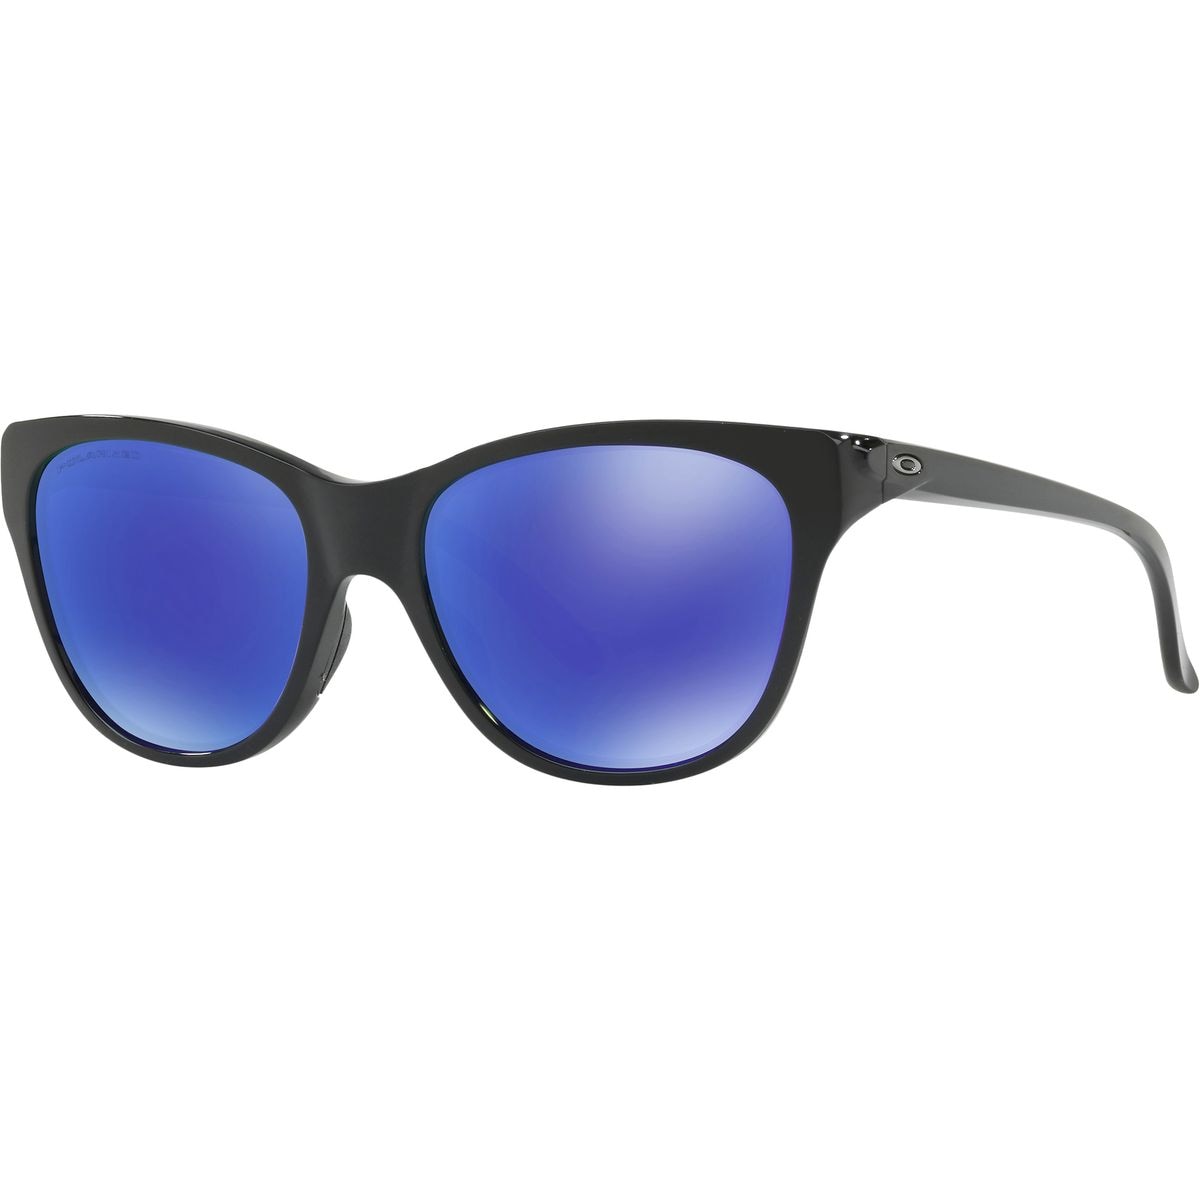 Поляризованные солнцезащитные очки hold out Oakley, черный поляризационные солнцезащитные очки oo9301 61 cohort oakley